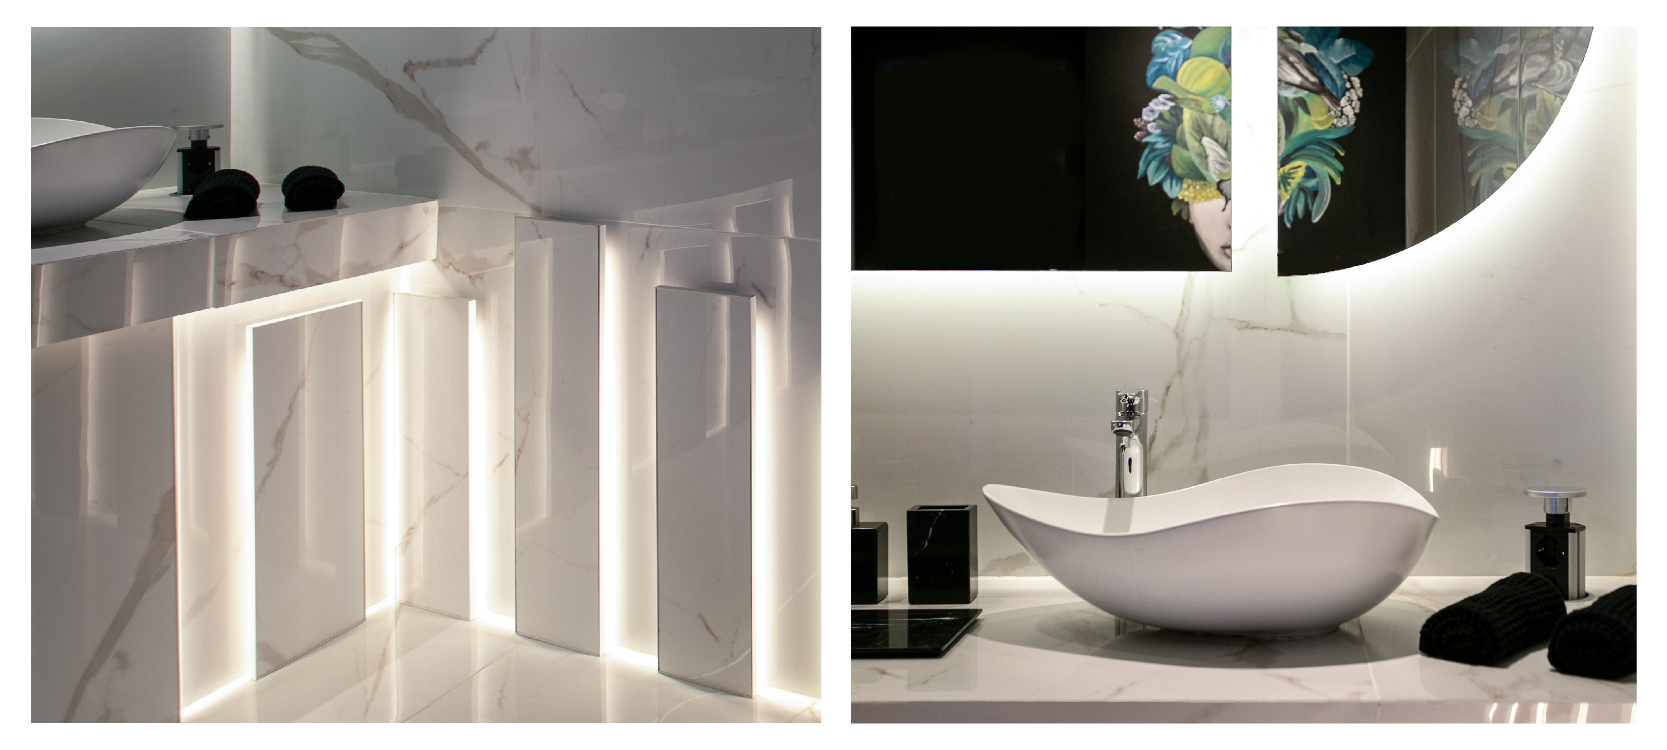 casa FOA, exposición, escenarios futuros, tendencias, diseño, estilo, novedades, marmol, calacatta, iluminación, espejo, figuras geometricas en el baño